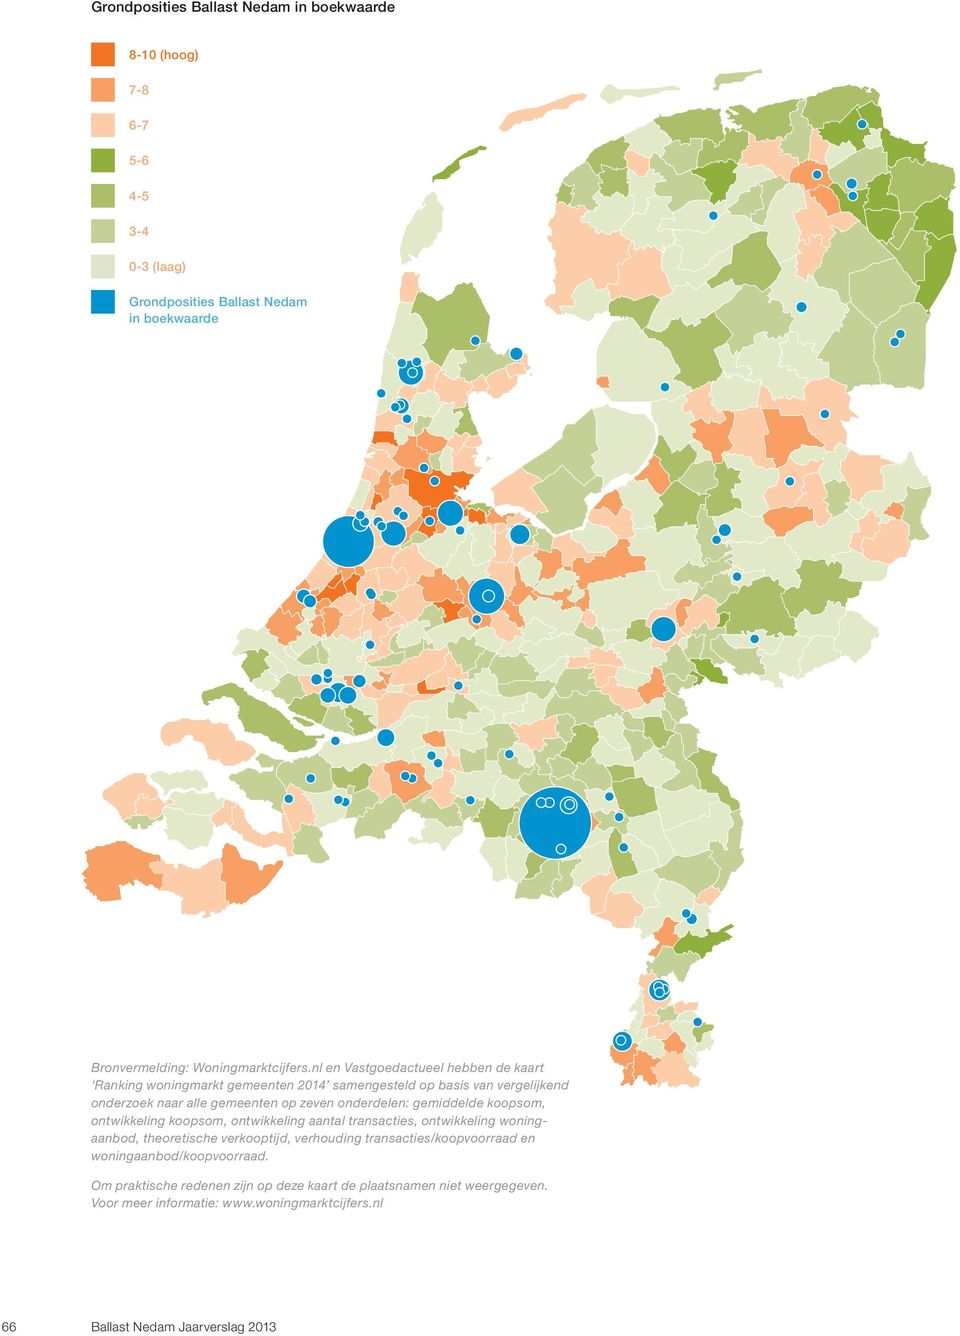 nl en Vastgoedactueel hebben de kaart Ranking woningmarkt gemeenten 2014 samengesteld op basis van vergelijkend onderzoek naar alle gemeenten op zeven